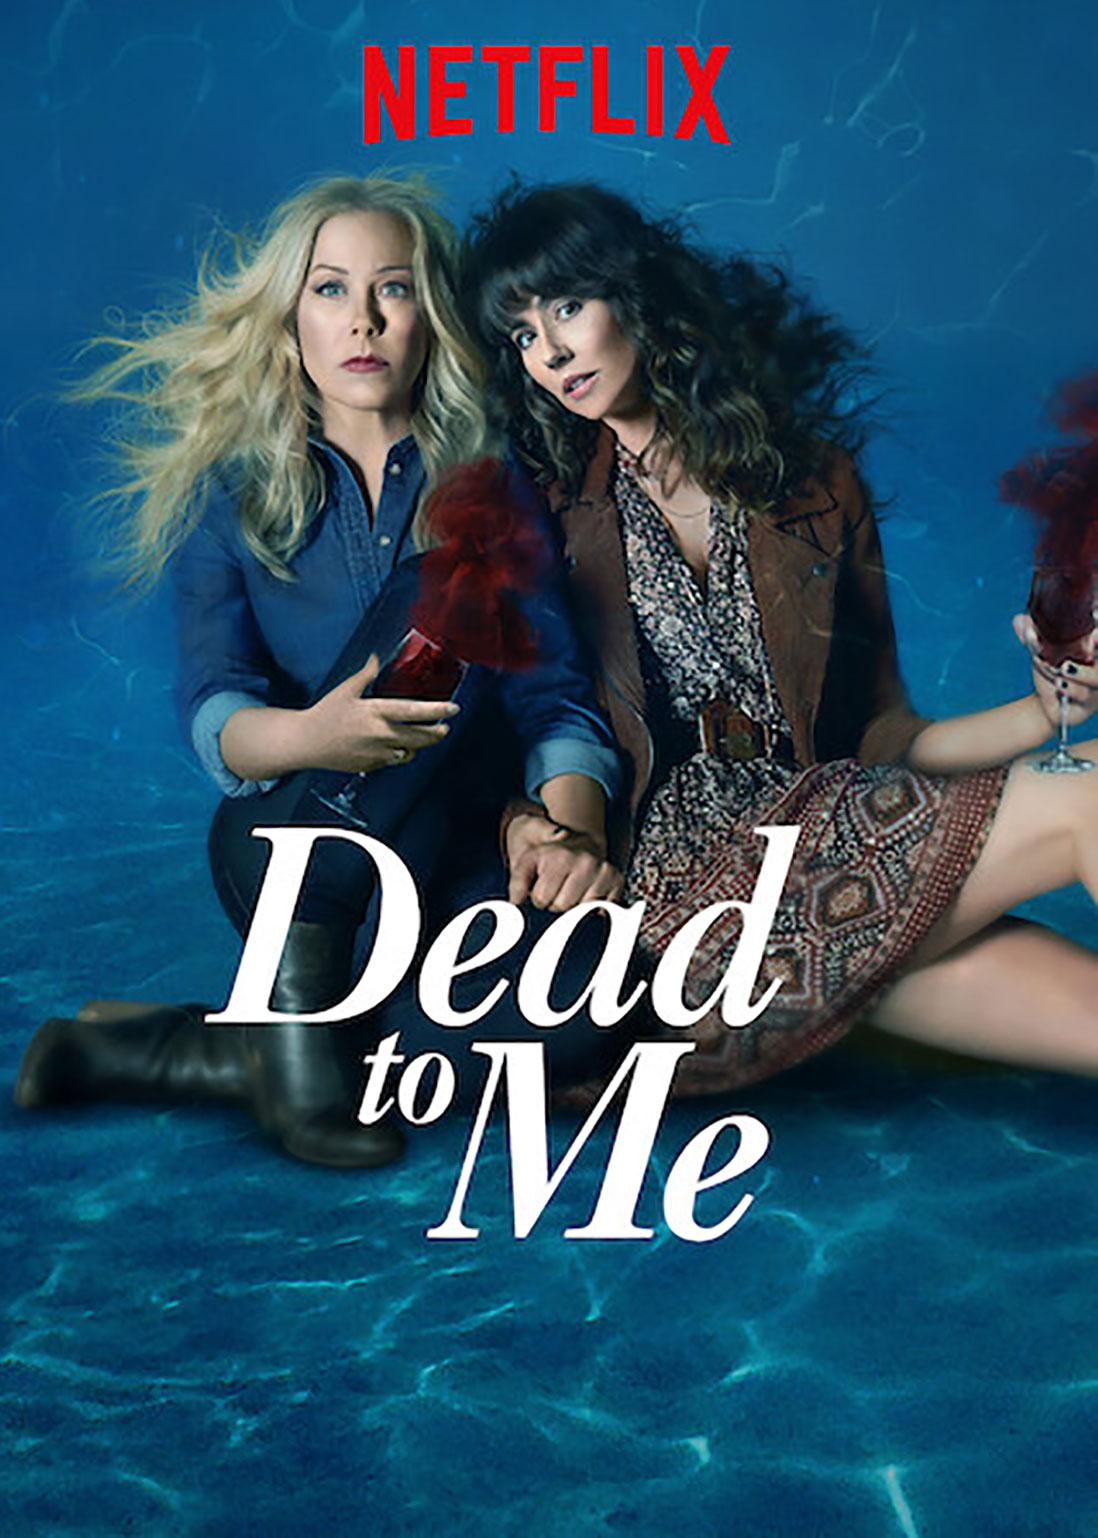 Dead to Me Season 3 Release Date